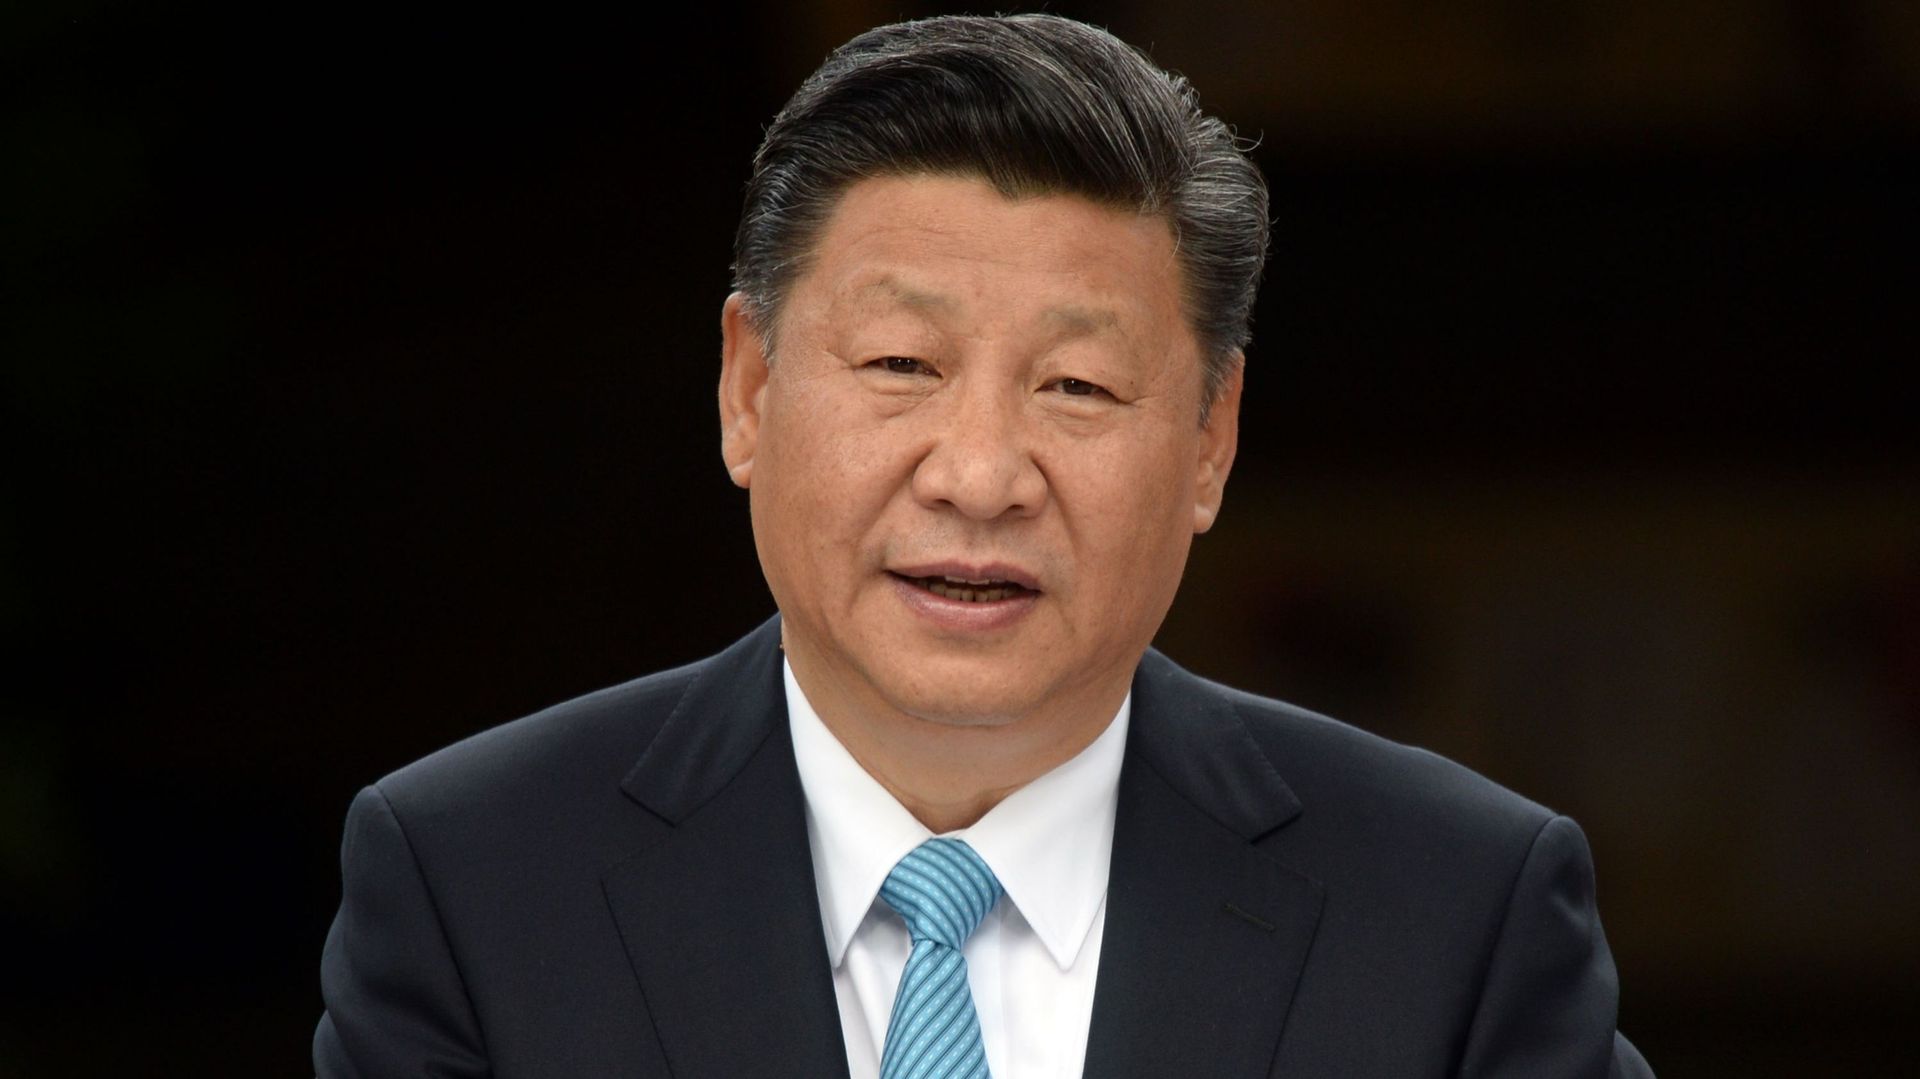  Xi Jinping souhaite une réunification pacifiques